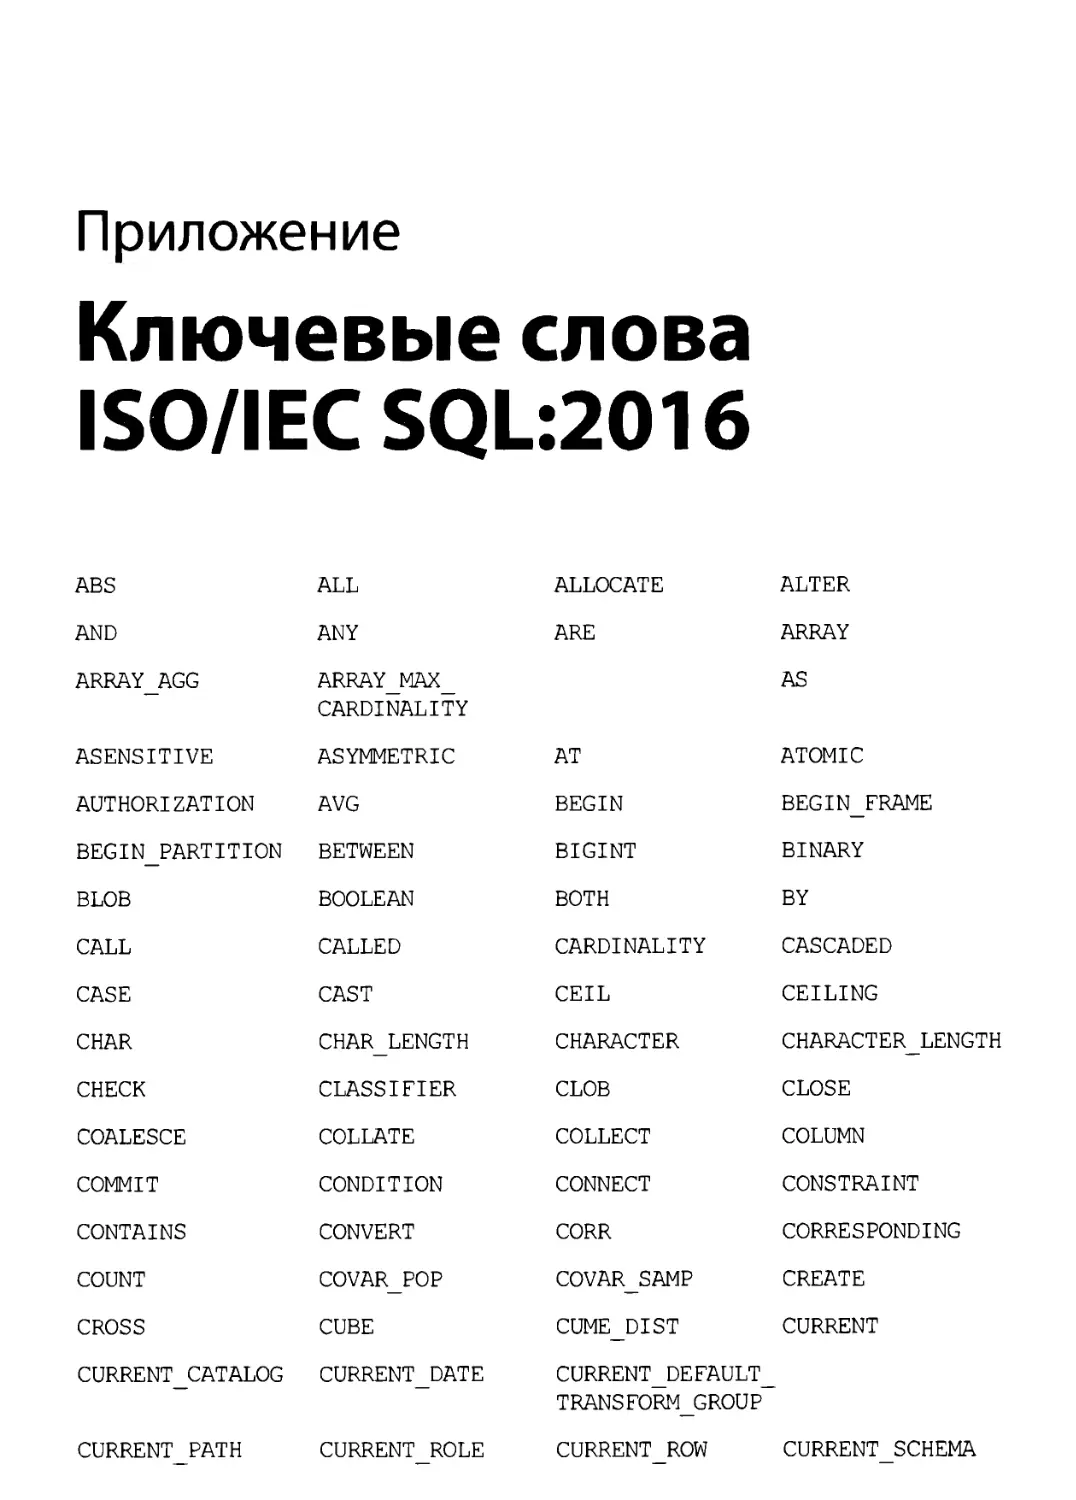 Приложение. Ключевые слова ISO/IEC SQL:2016